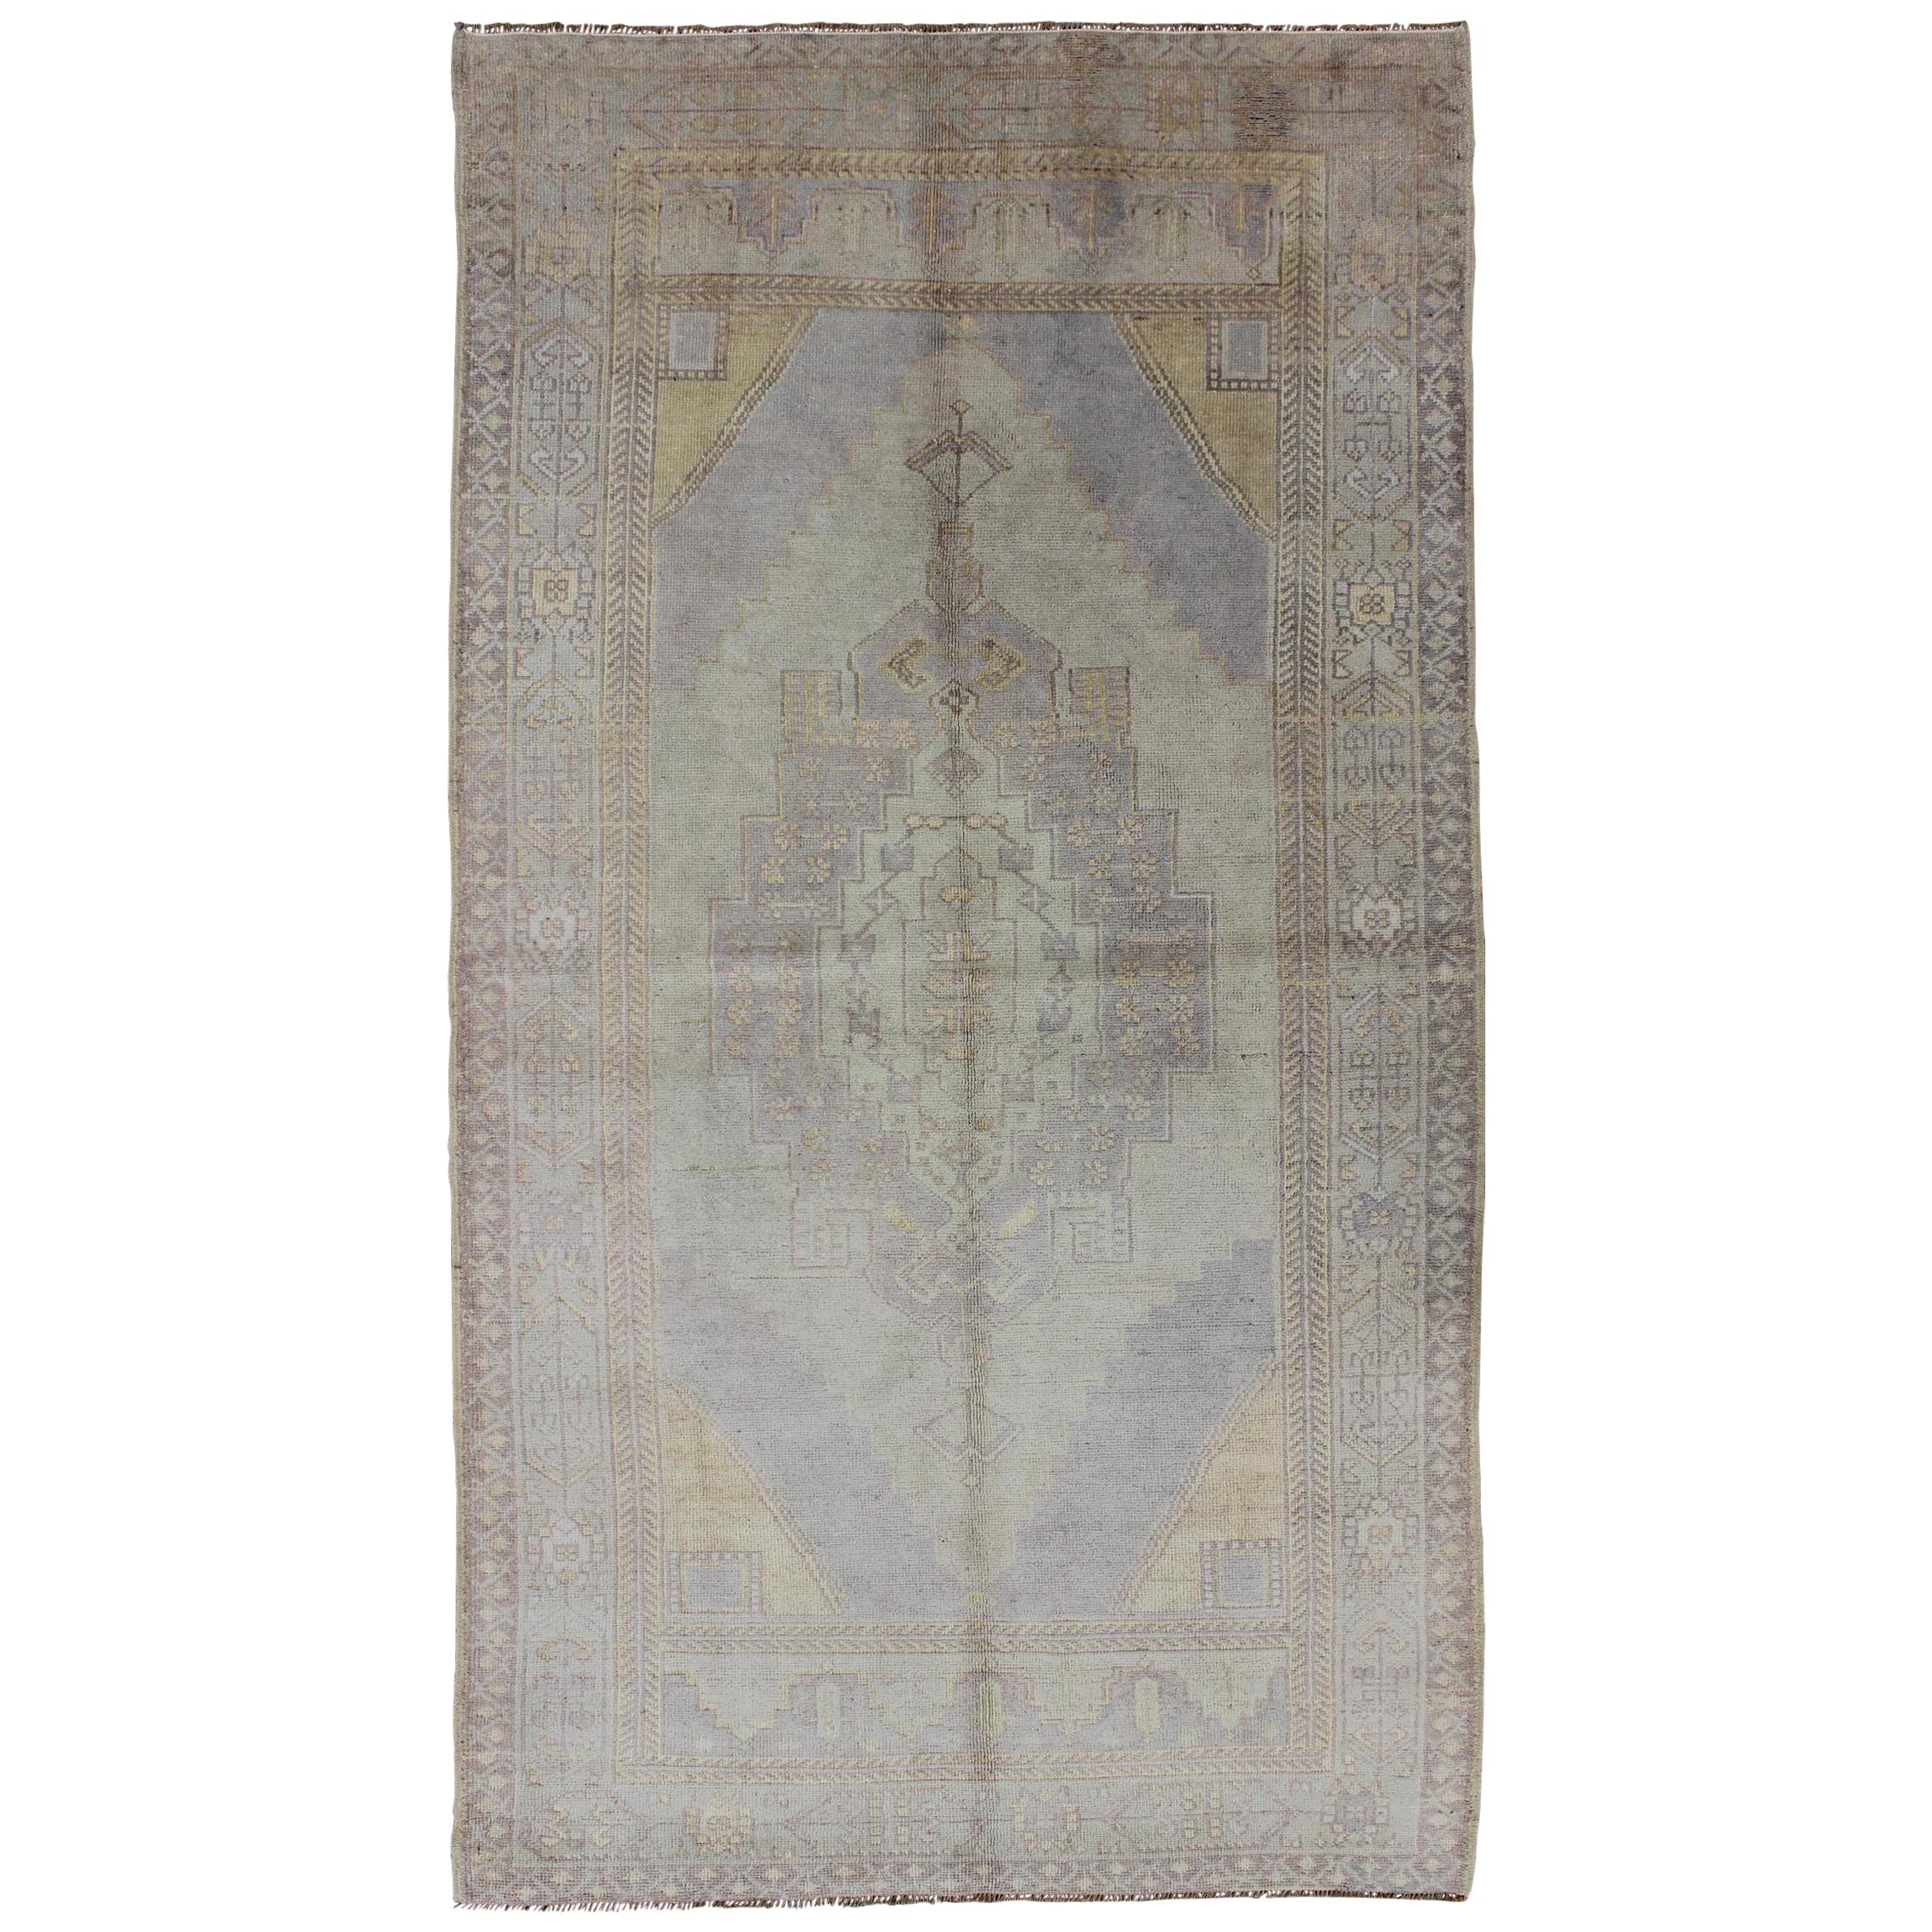 Mutierter türkischer Oushak-Teppich im Vintage-Stil mit Medaillon und geometrischem Muster